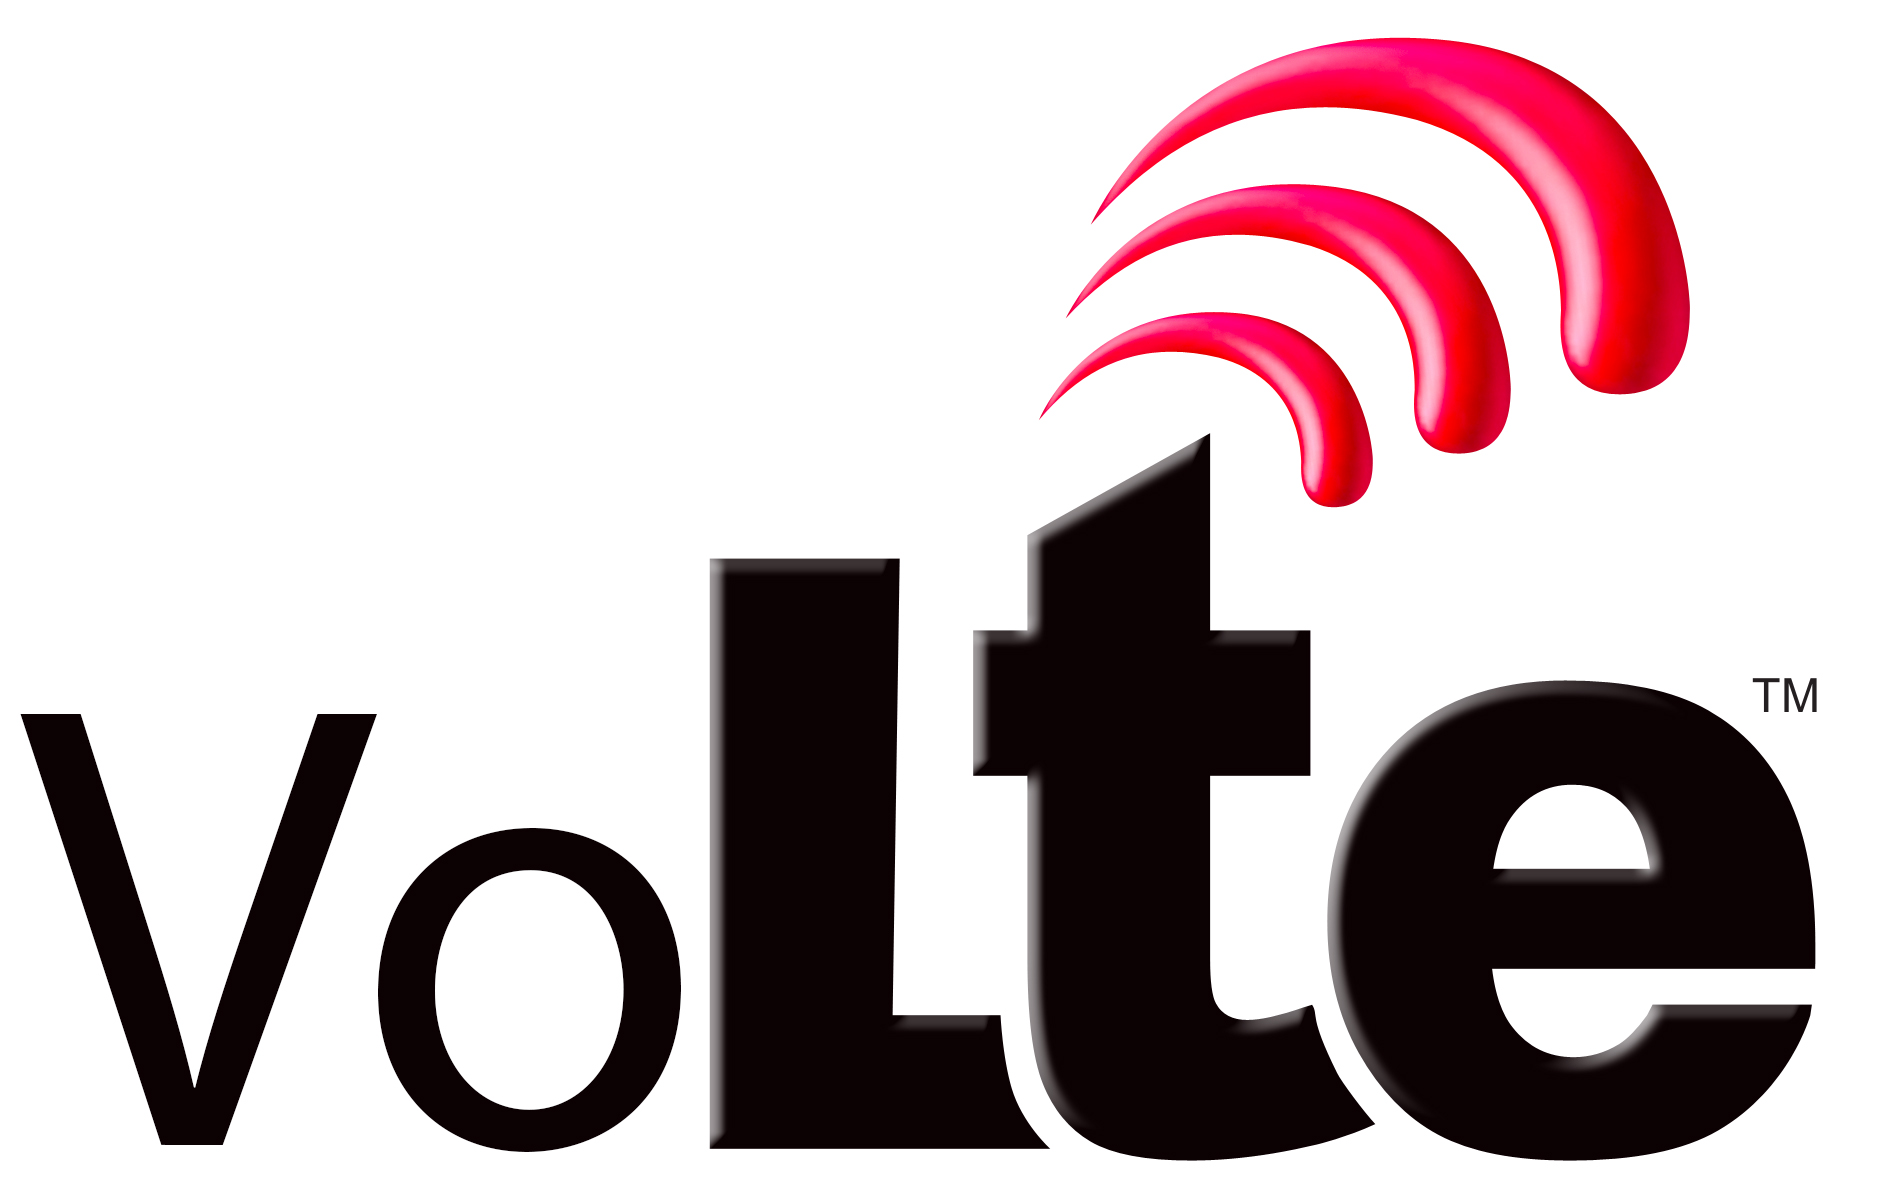 همراه اول سرویس VOLTE را راه اندازی کرد